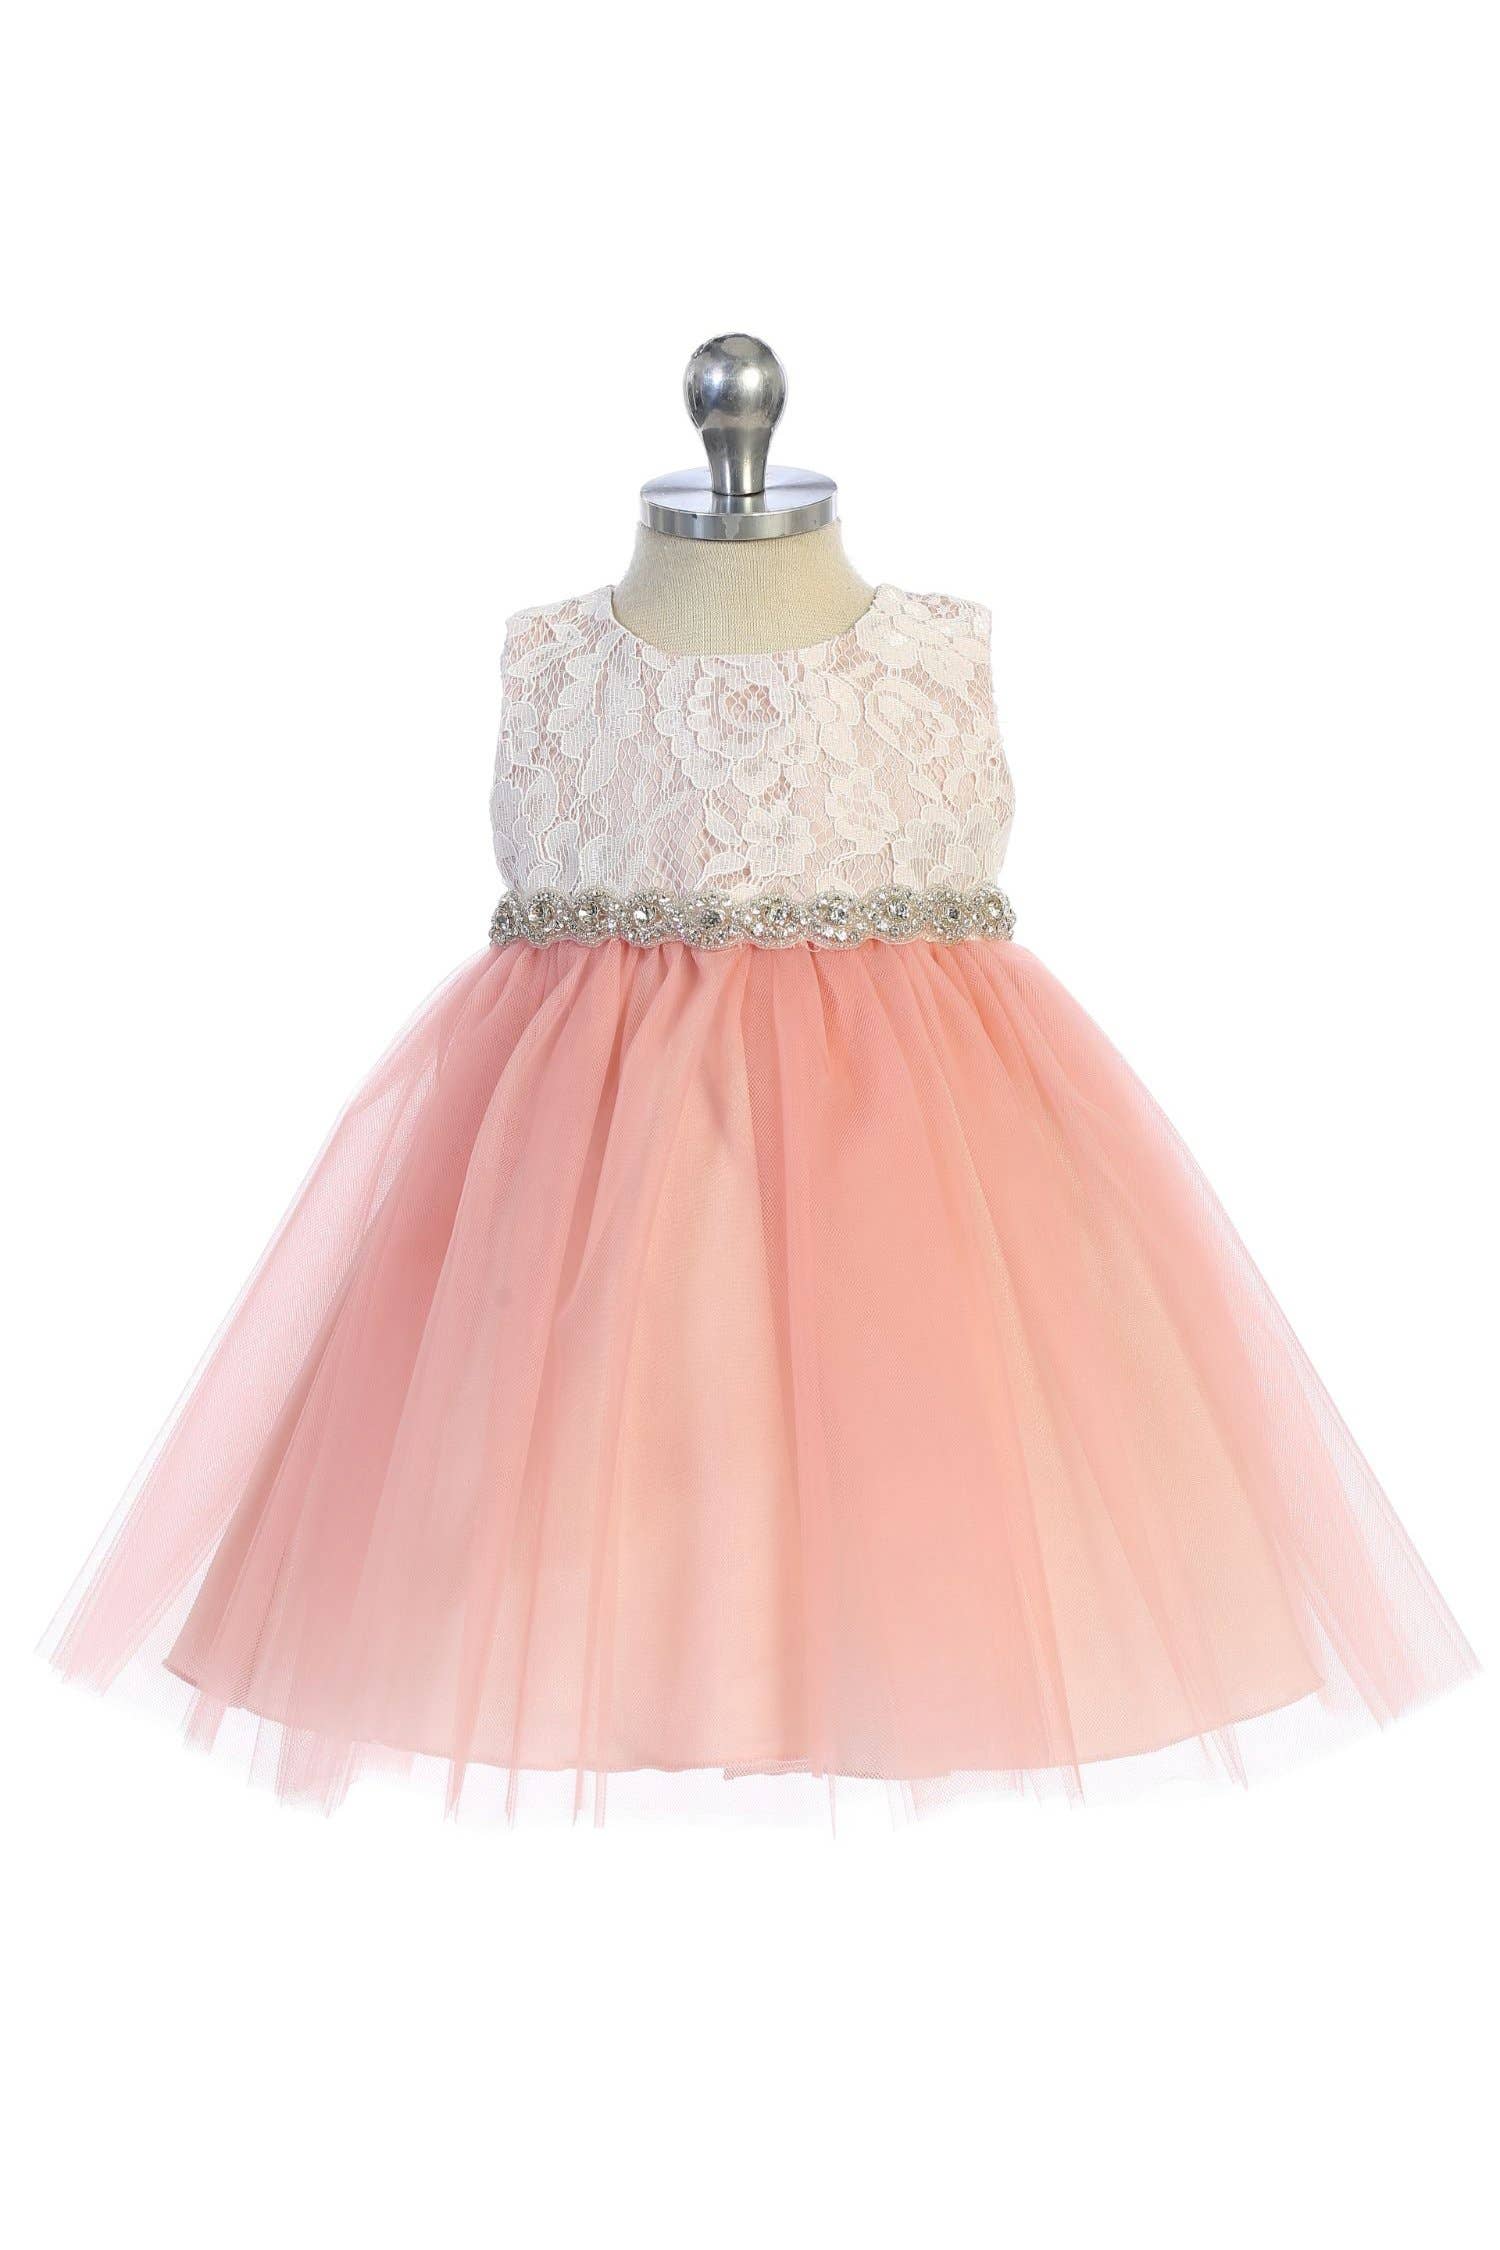 Lace Dress w/ Rhinestone Trim (BABY SIZE)